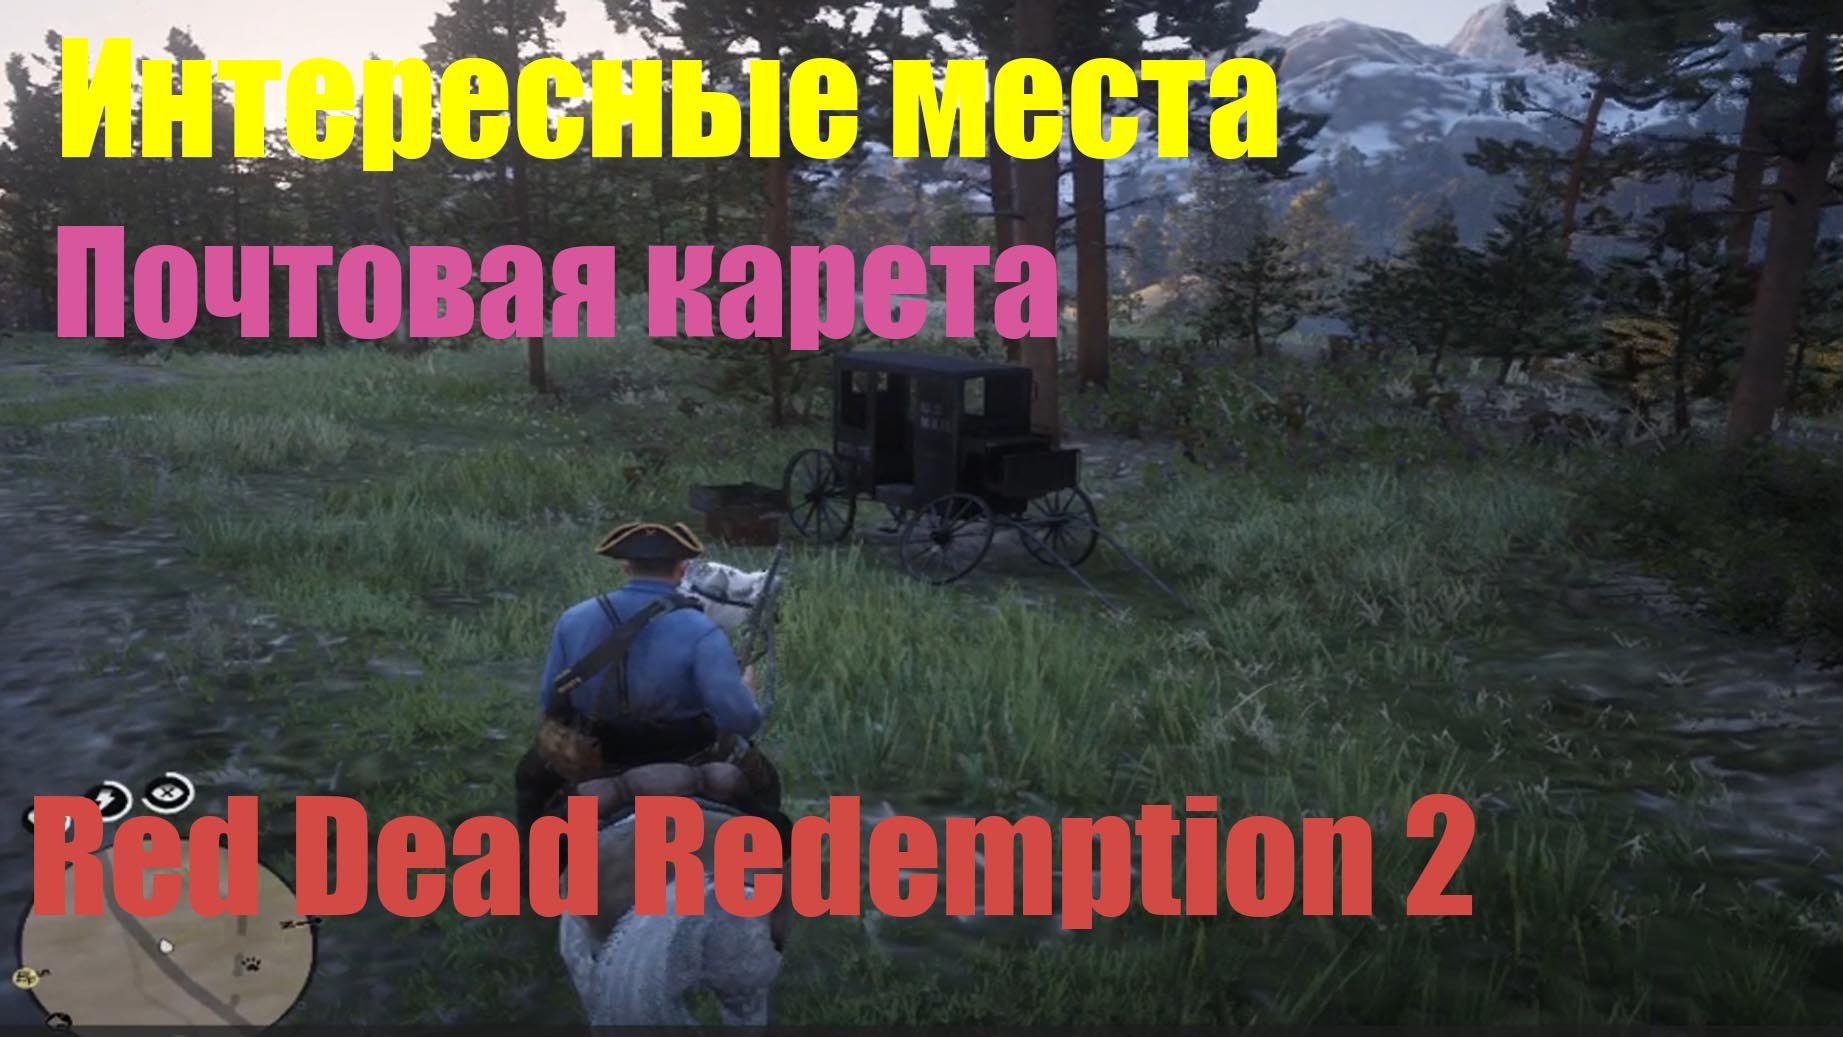 Red Dead Redemption 2 - Интересные места. Почтовая карета